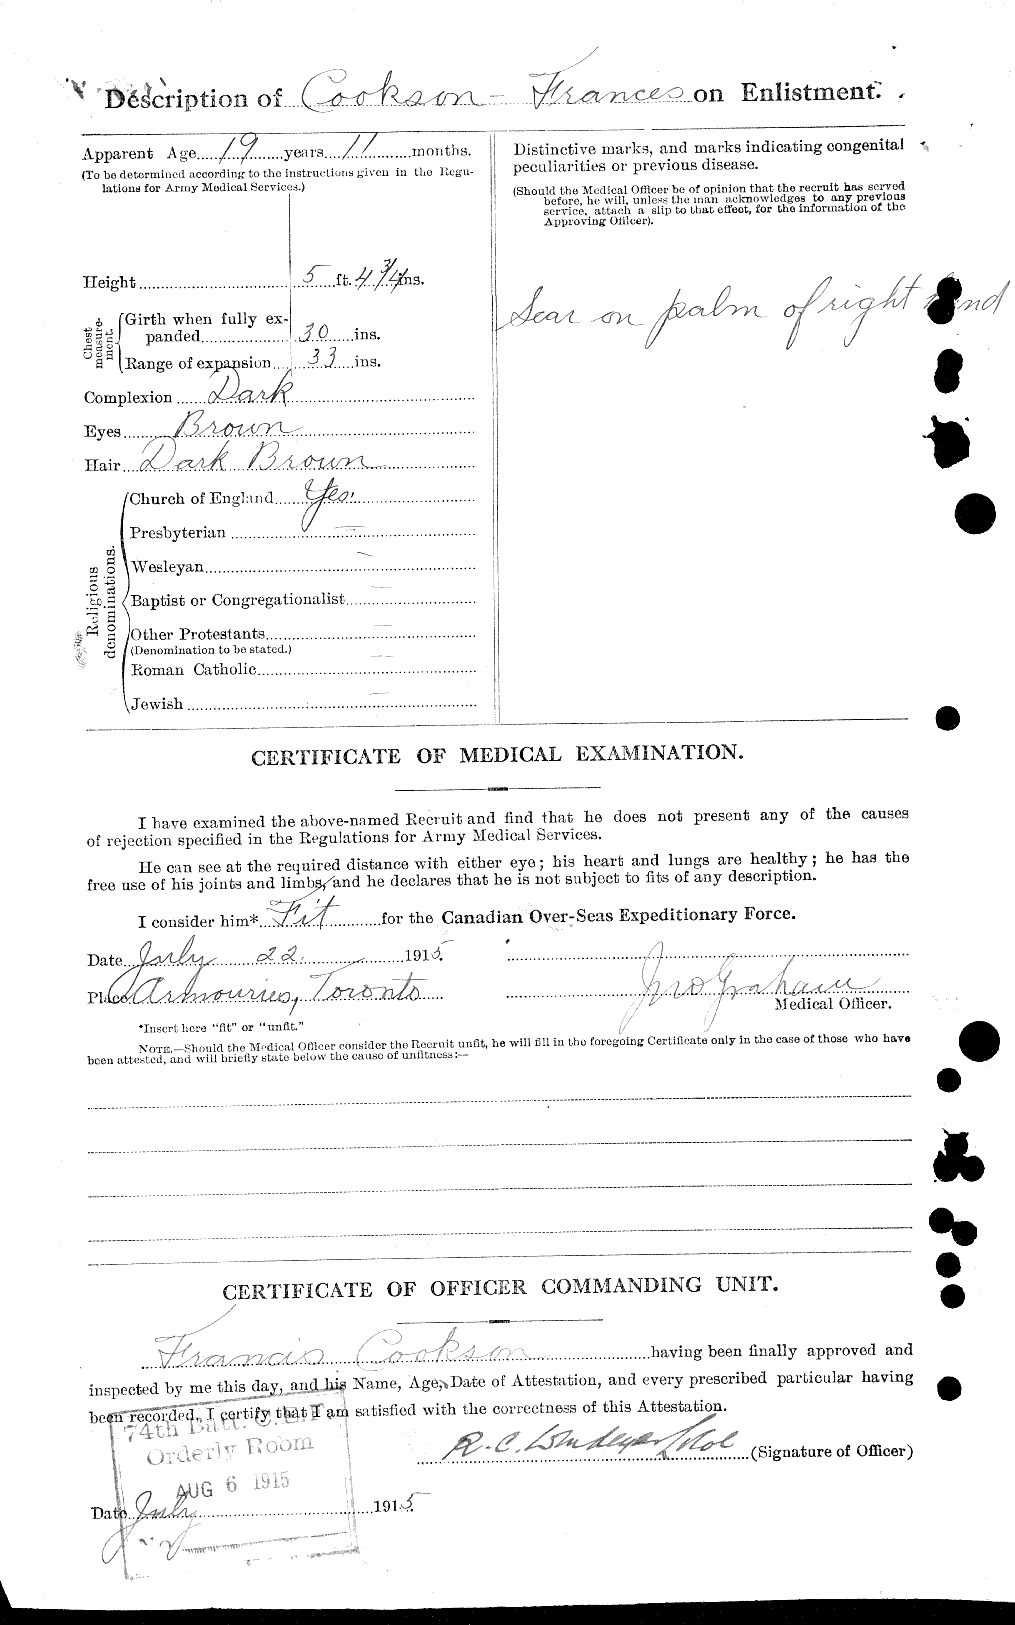 Dossiers du Personnel de la Première Guerre mondiale - CEC 036375b